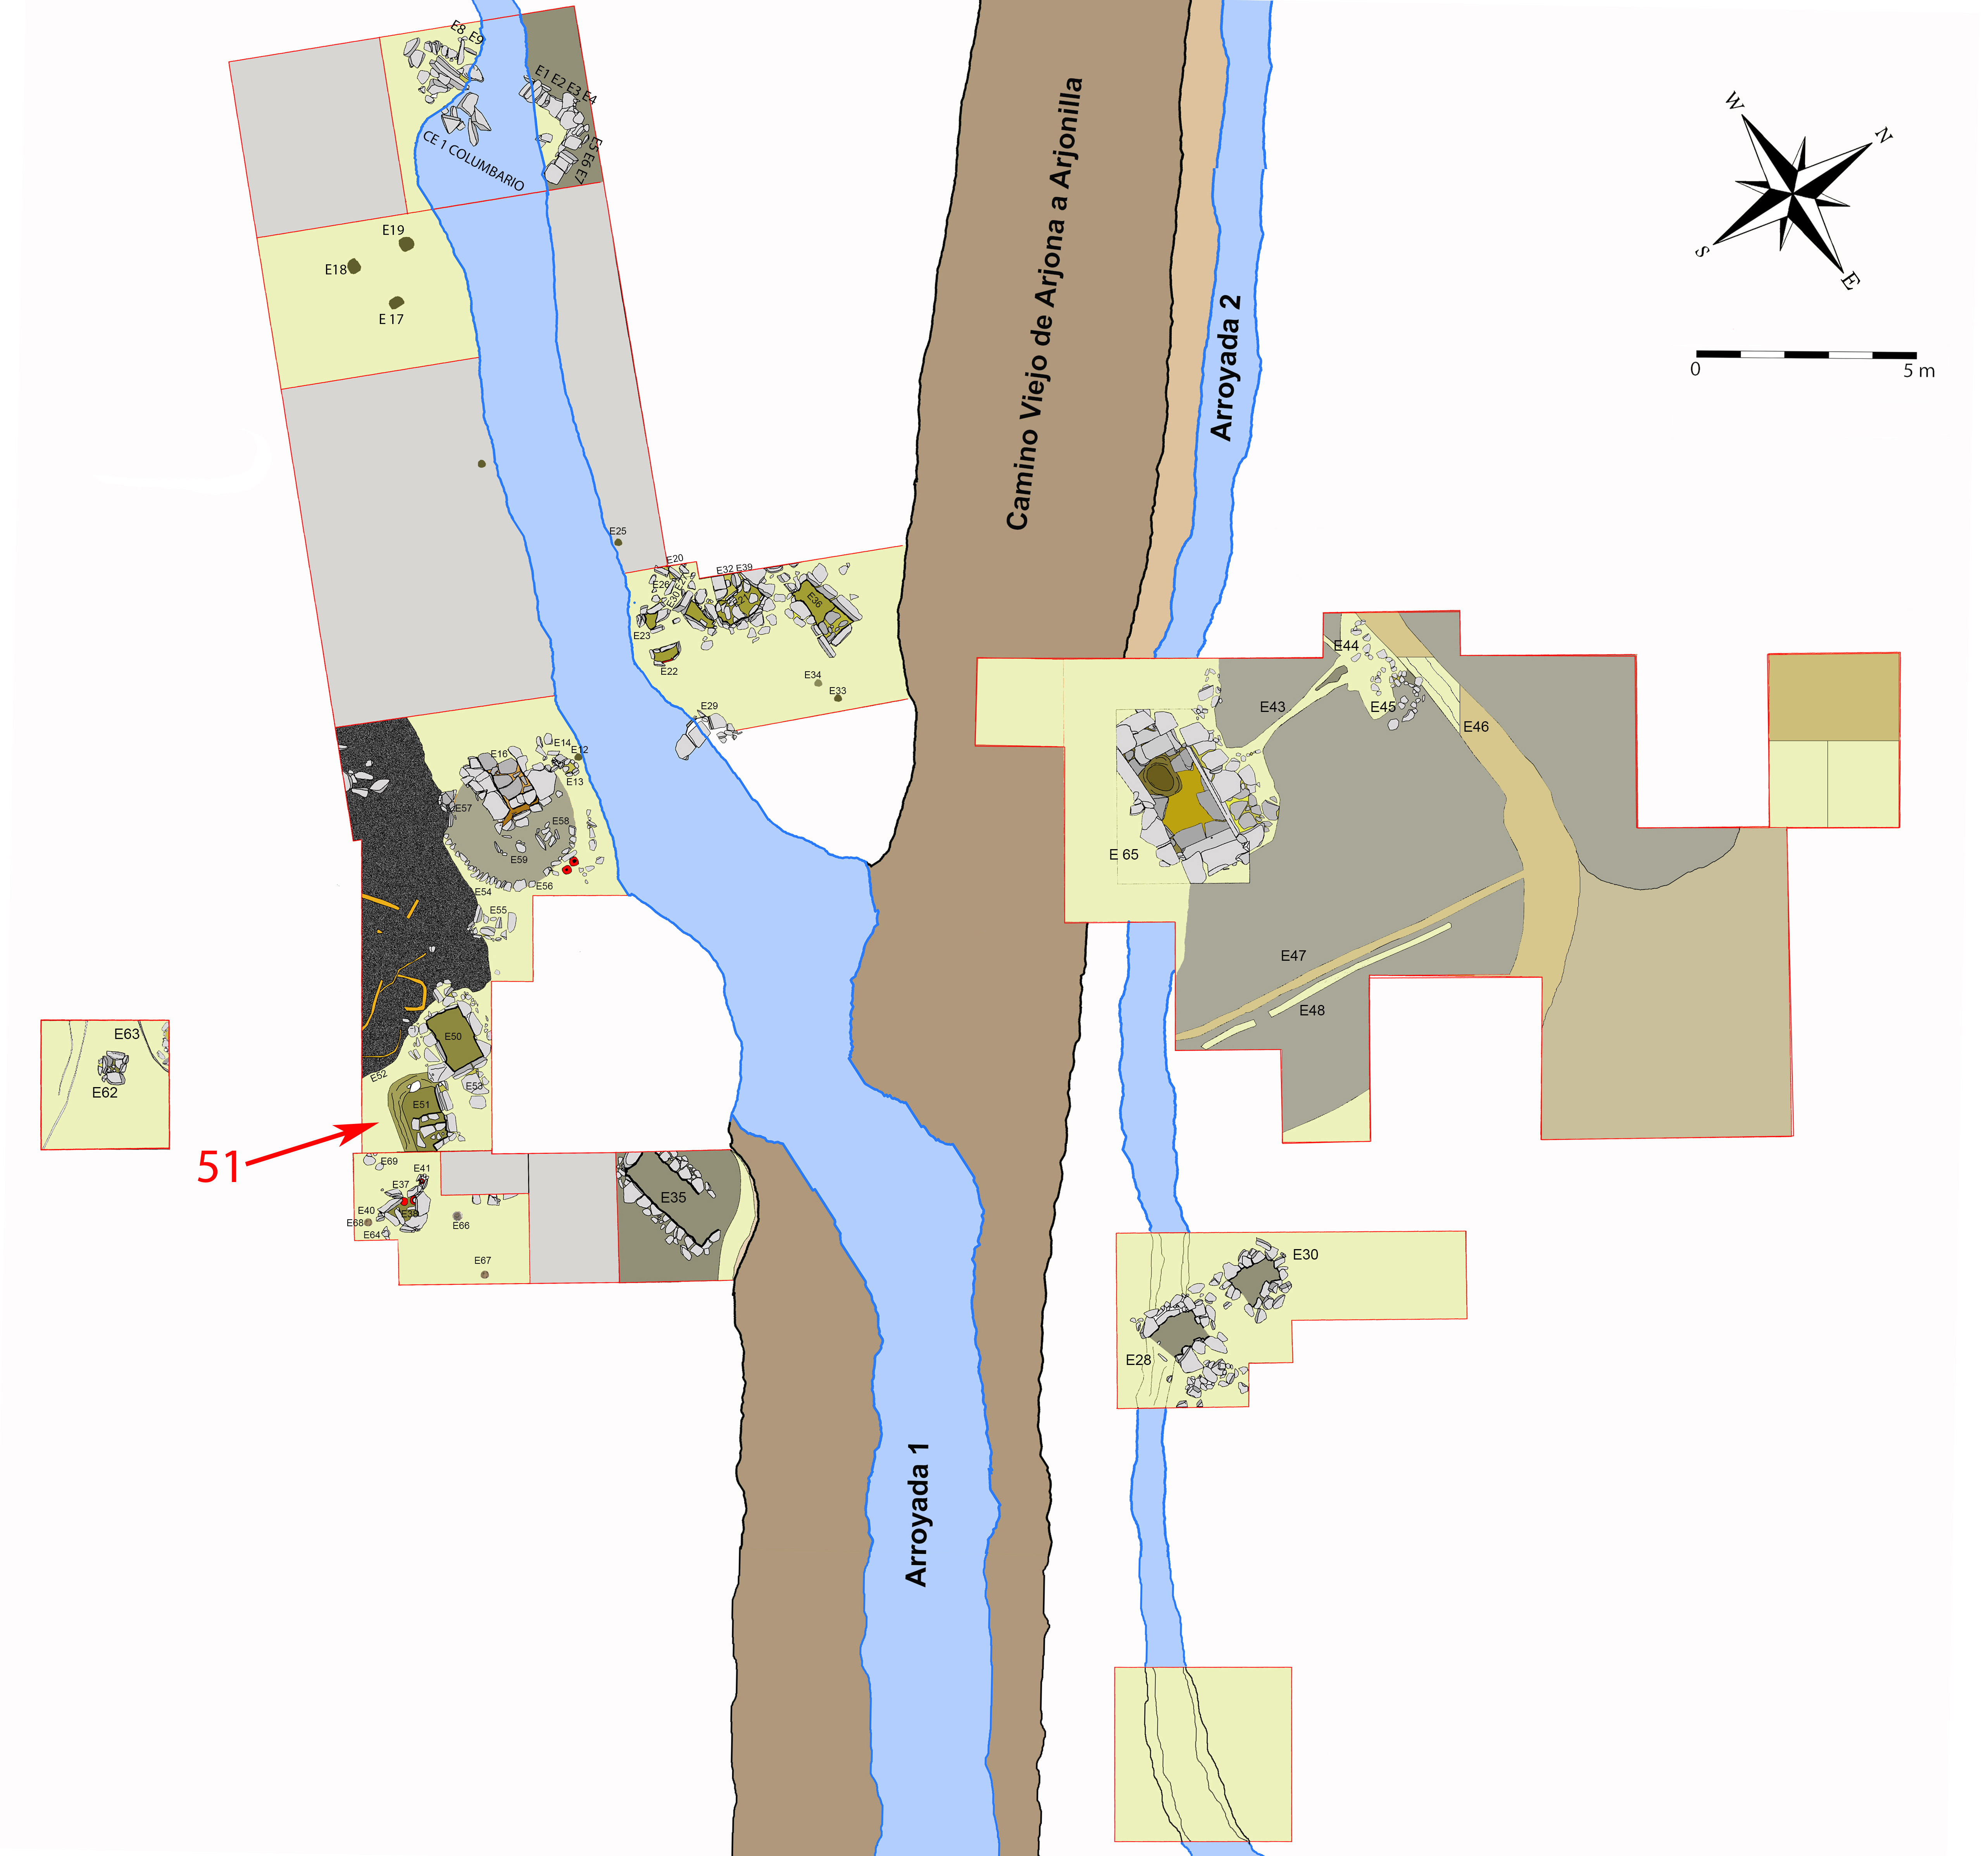 Plano general de la necrópolis de Piquía y localización de la tumba 51